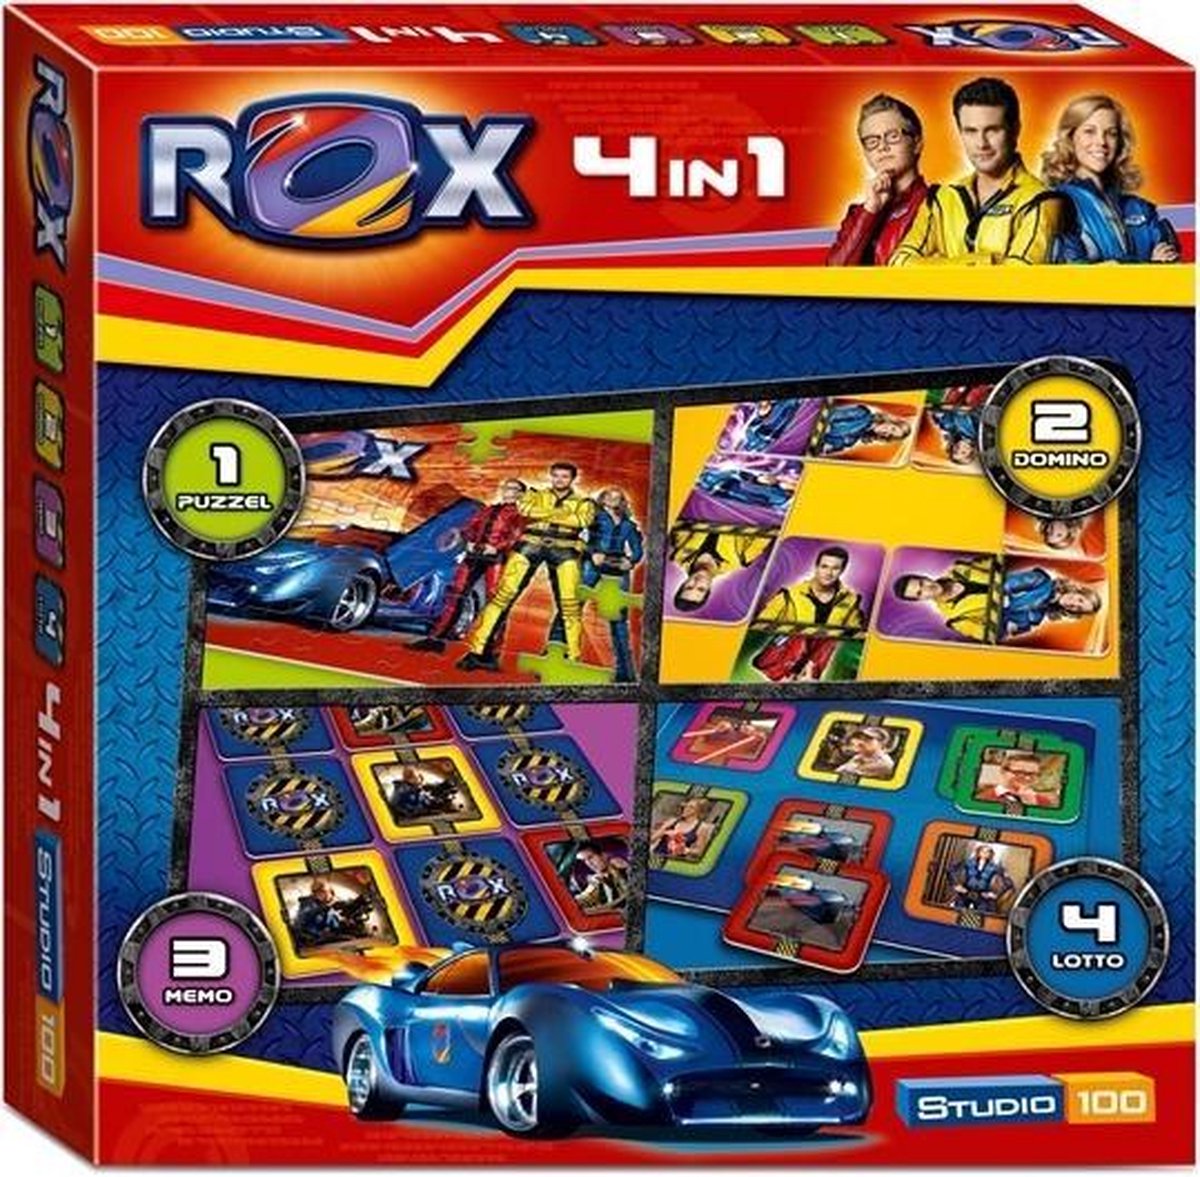 Rox 4 in 1 Speldoos - Kinderspel | Games | bol.com